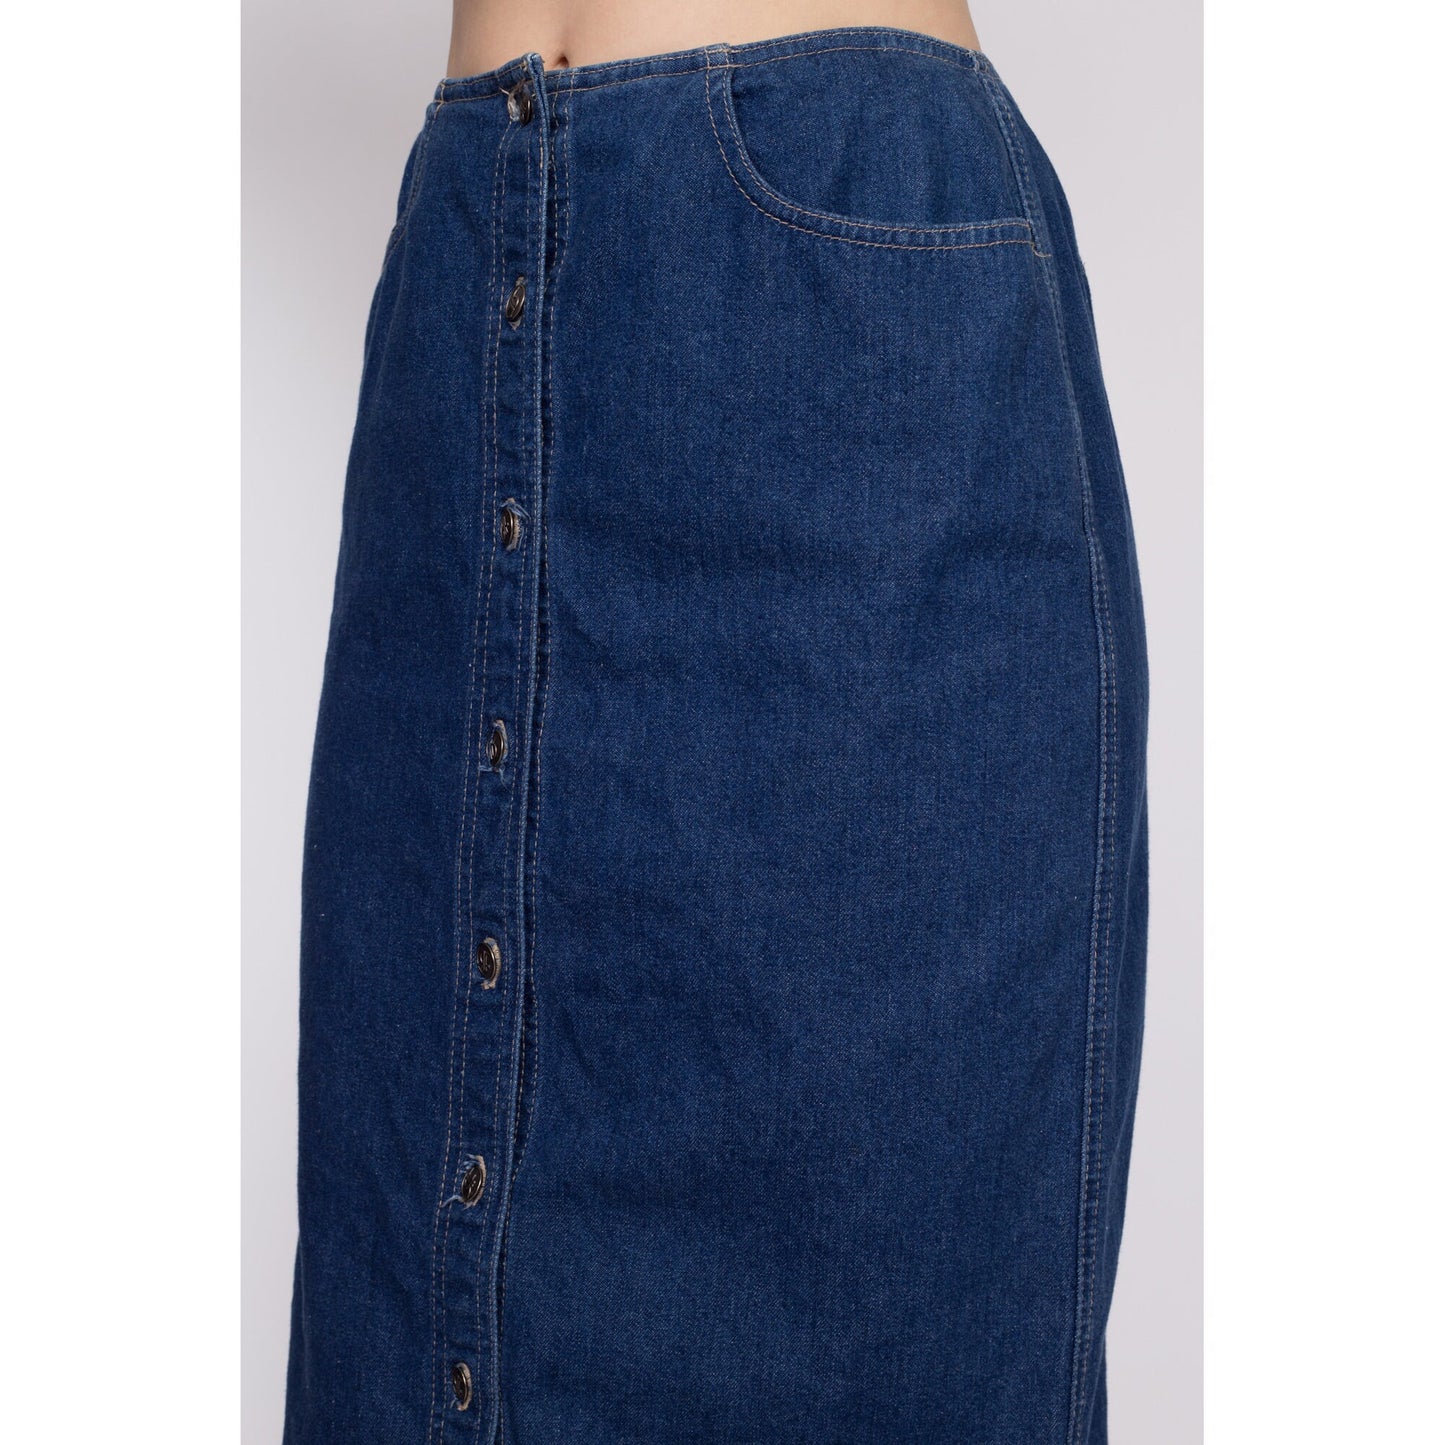 90s Denim Button Front Maxi Skirt - Medium, 28" | Vintage Grunge High Waisted Dark Wash Jean Pencil Skirt